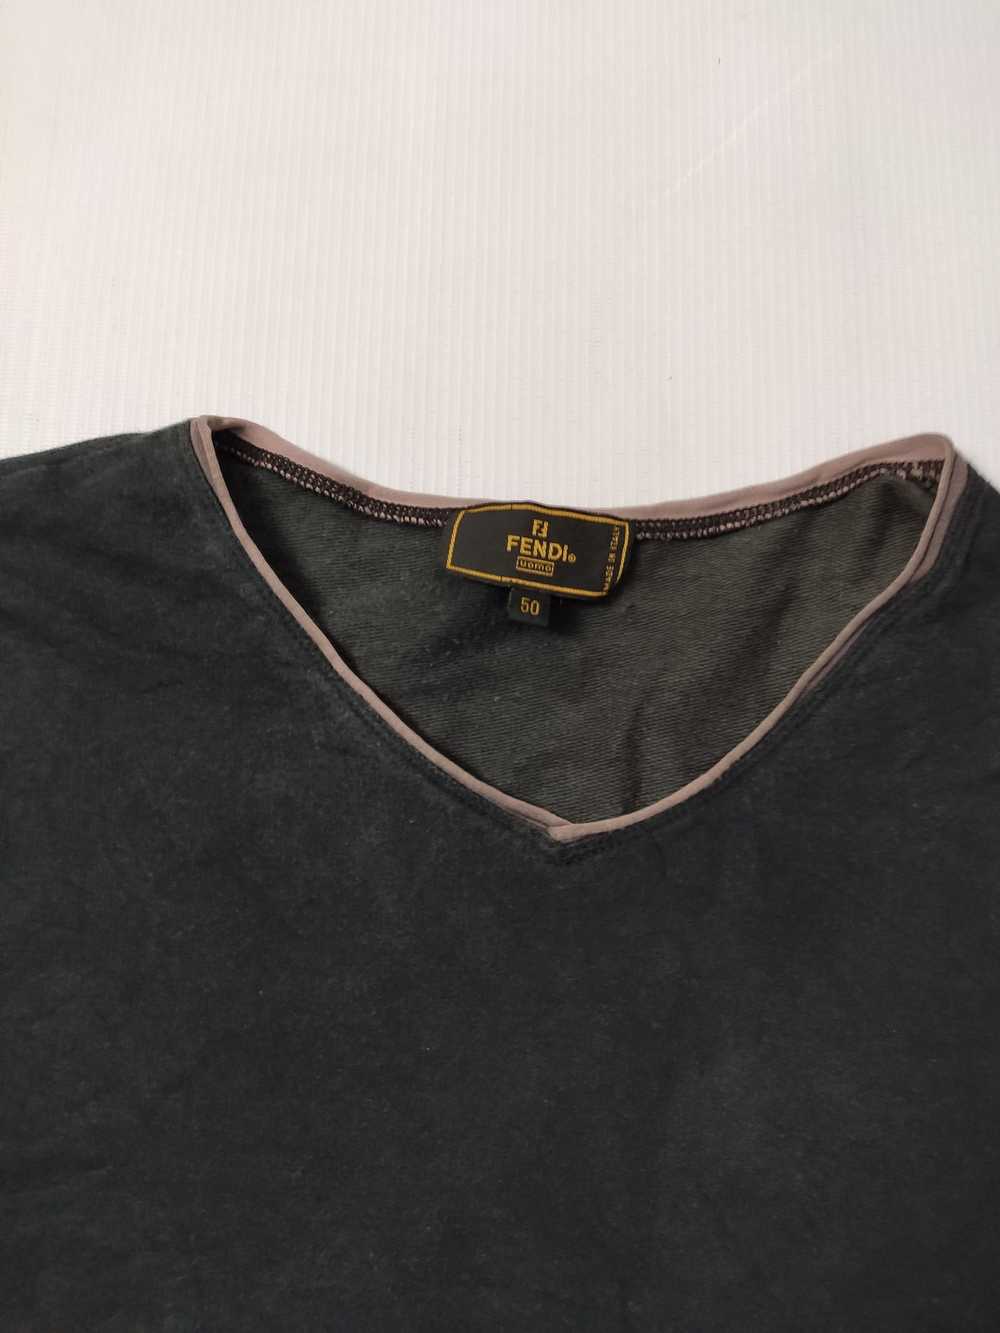 Fendi × Vintage Vintage Fendi T-Shirt - image 3